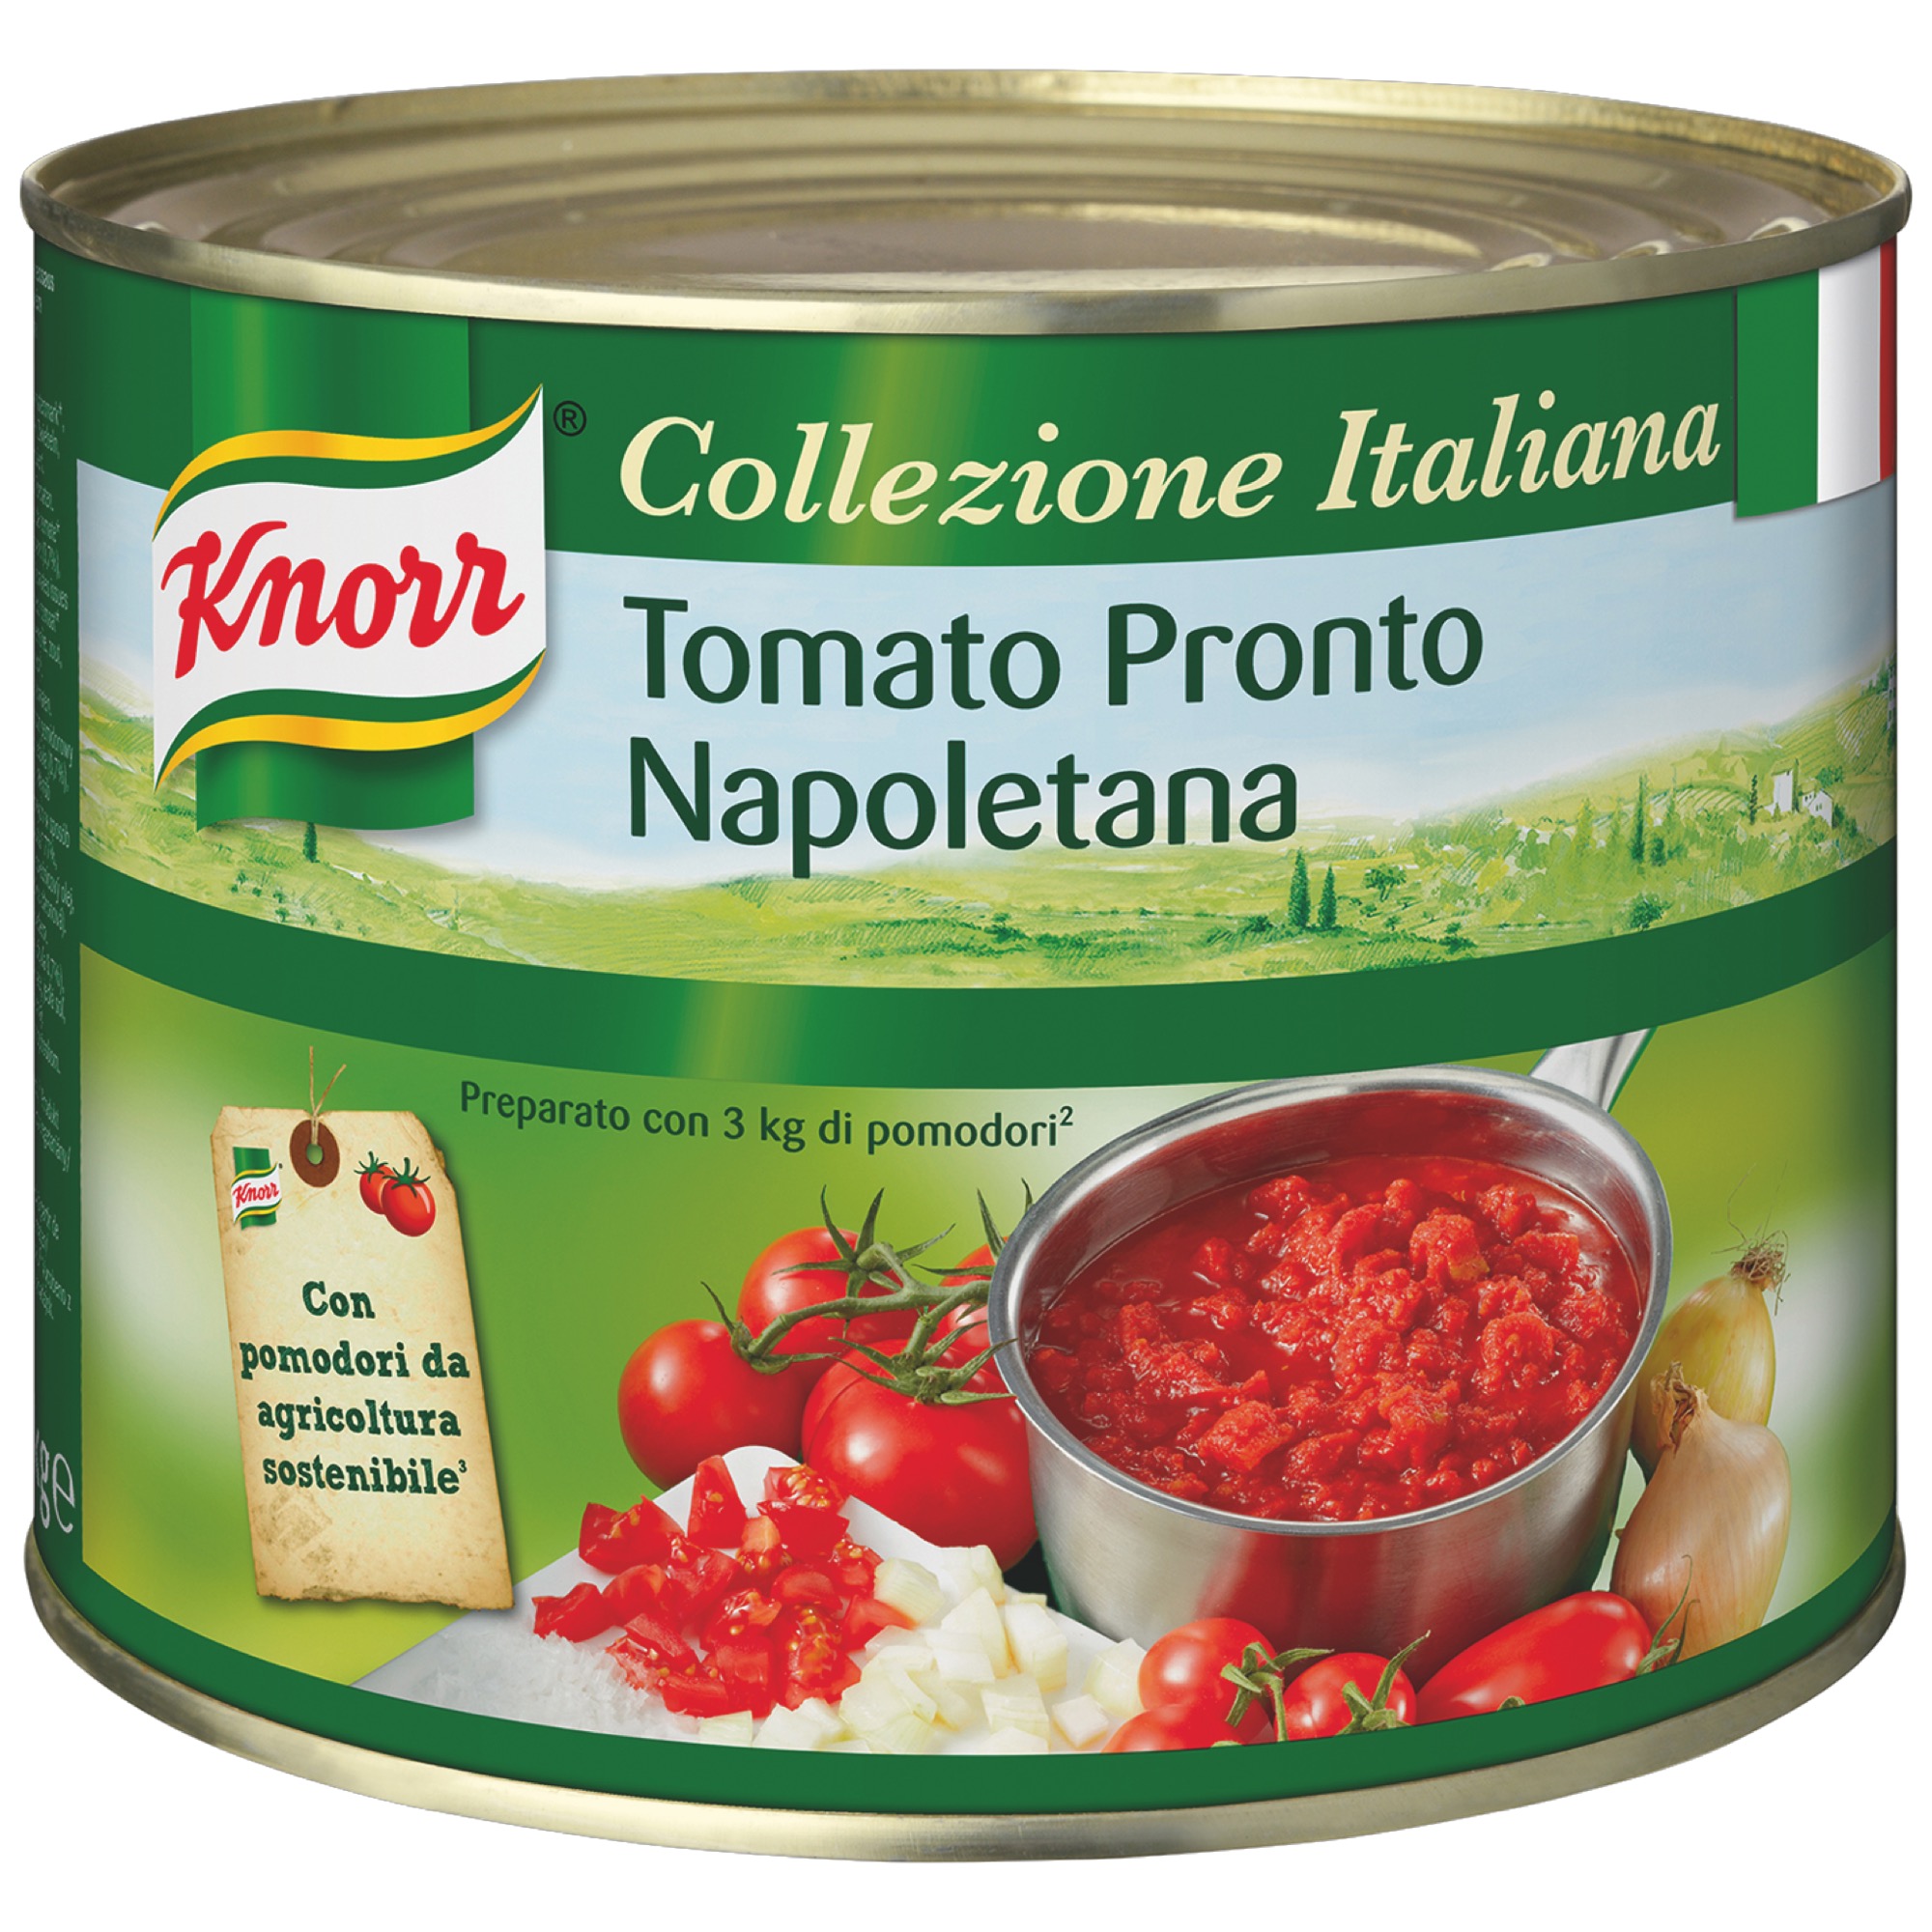 Knorr Tomato Pronto Napoletana 2kg